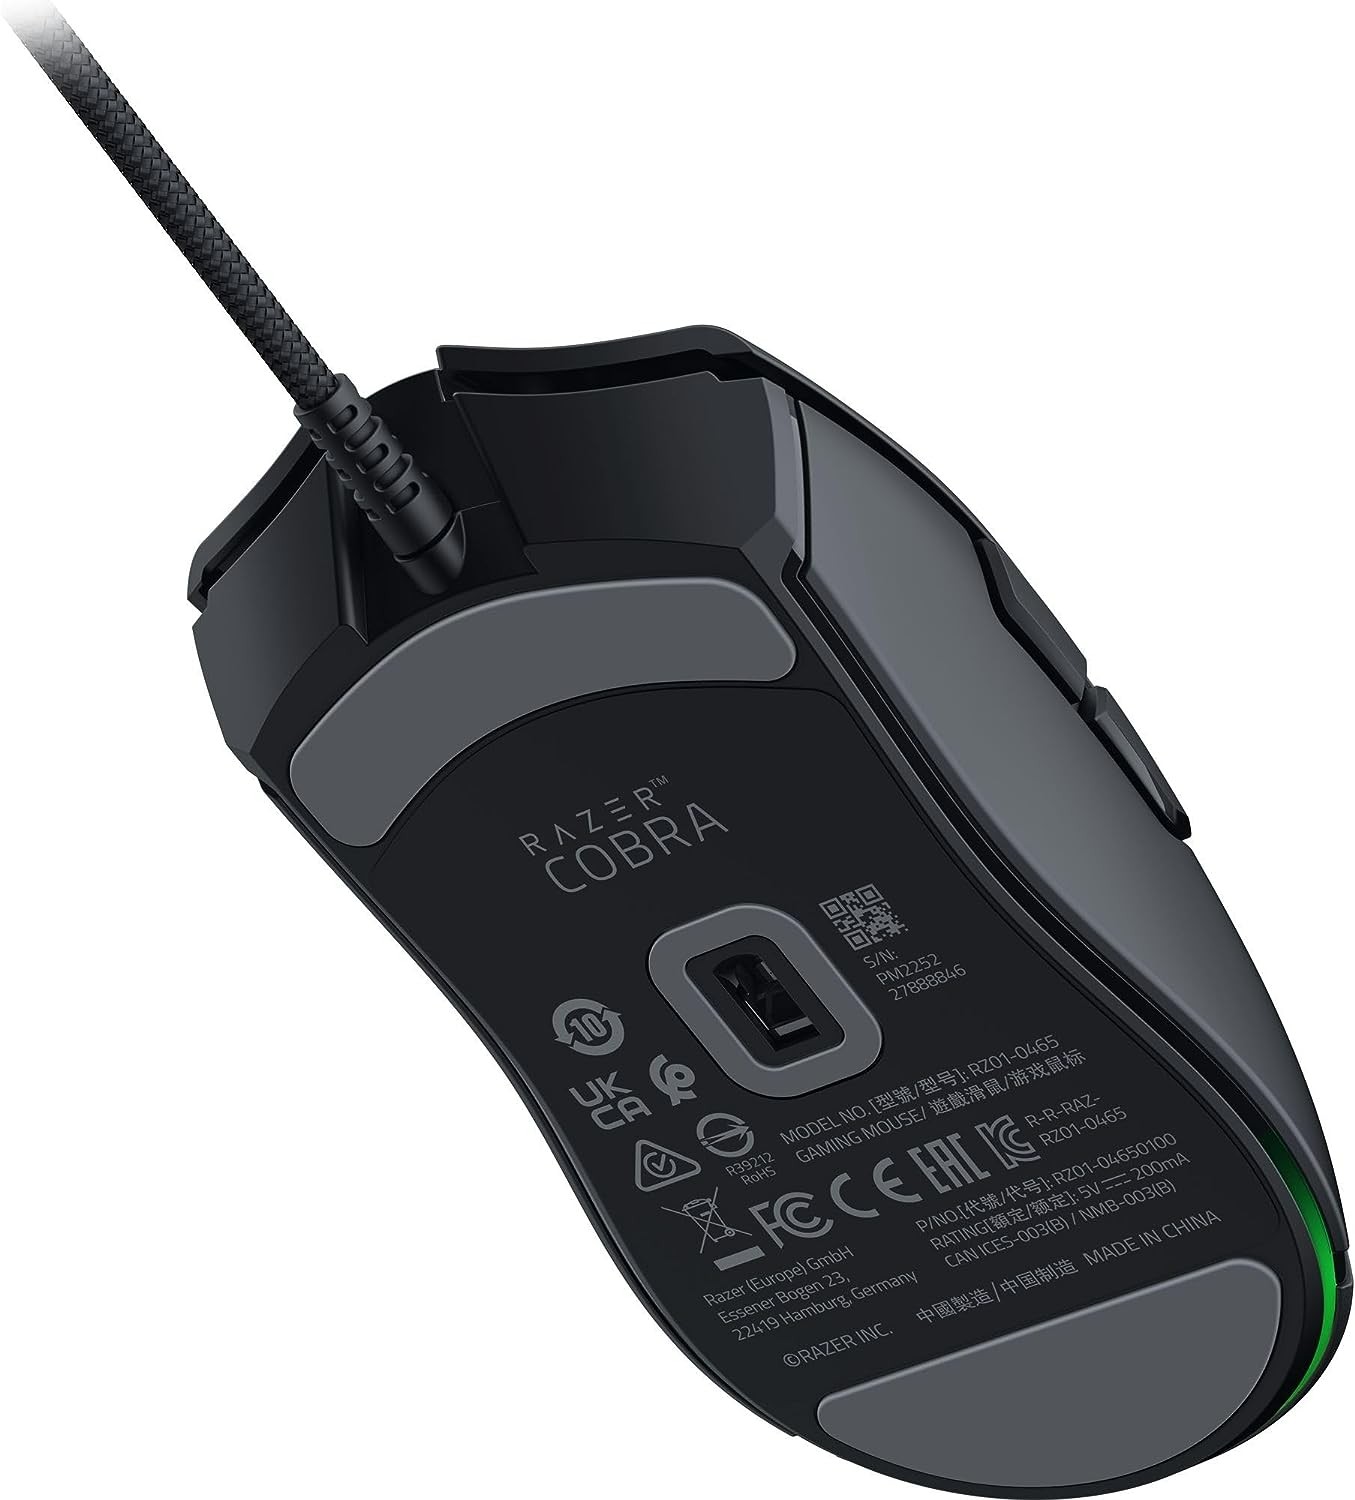 Razer Cobra juoda laidinė žaidimų pelė | 8500 DPI